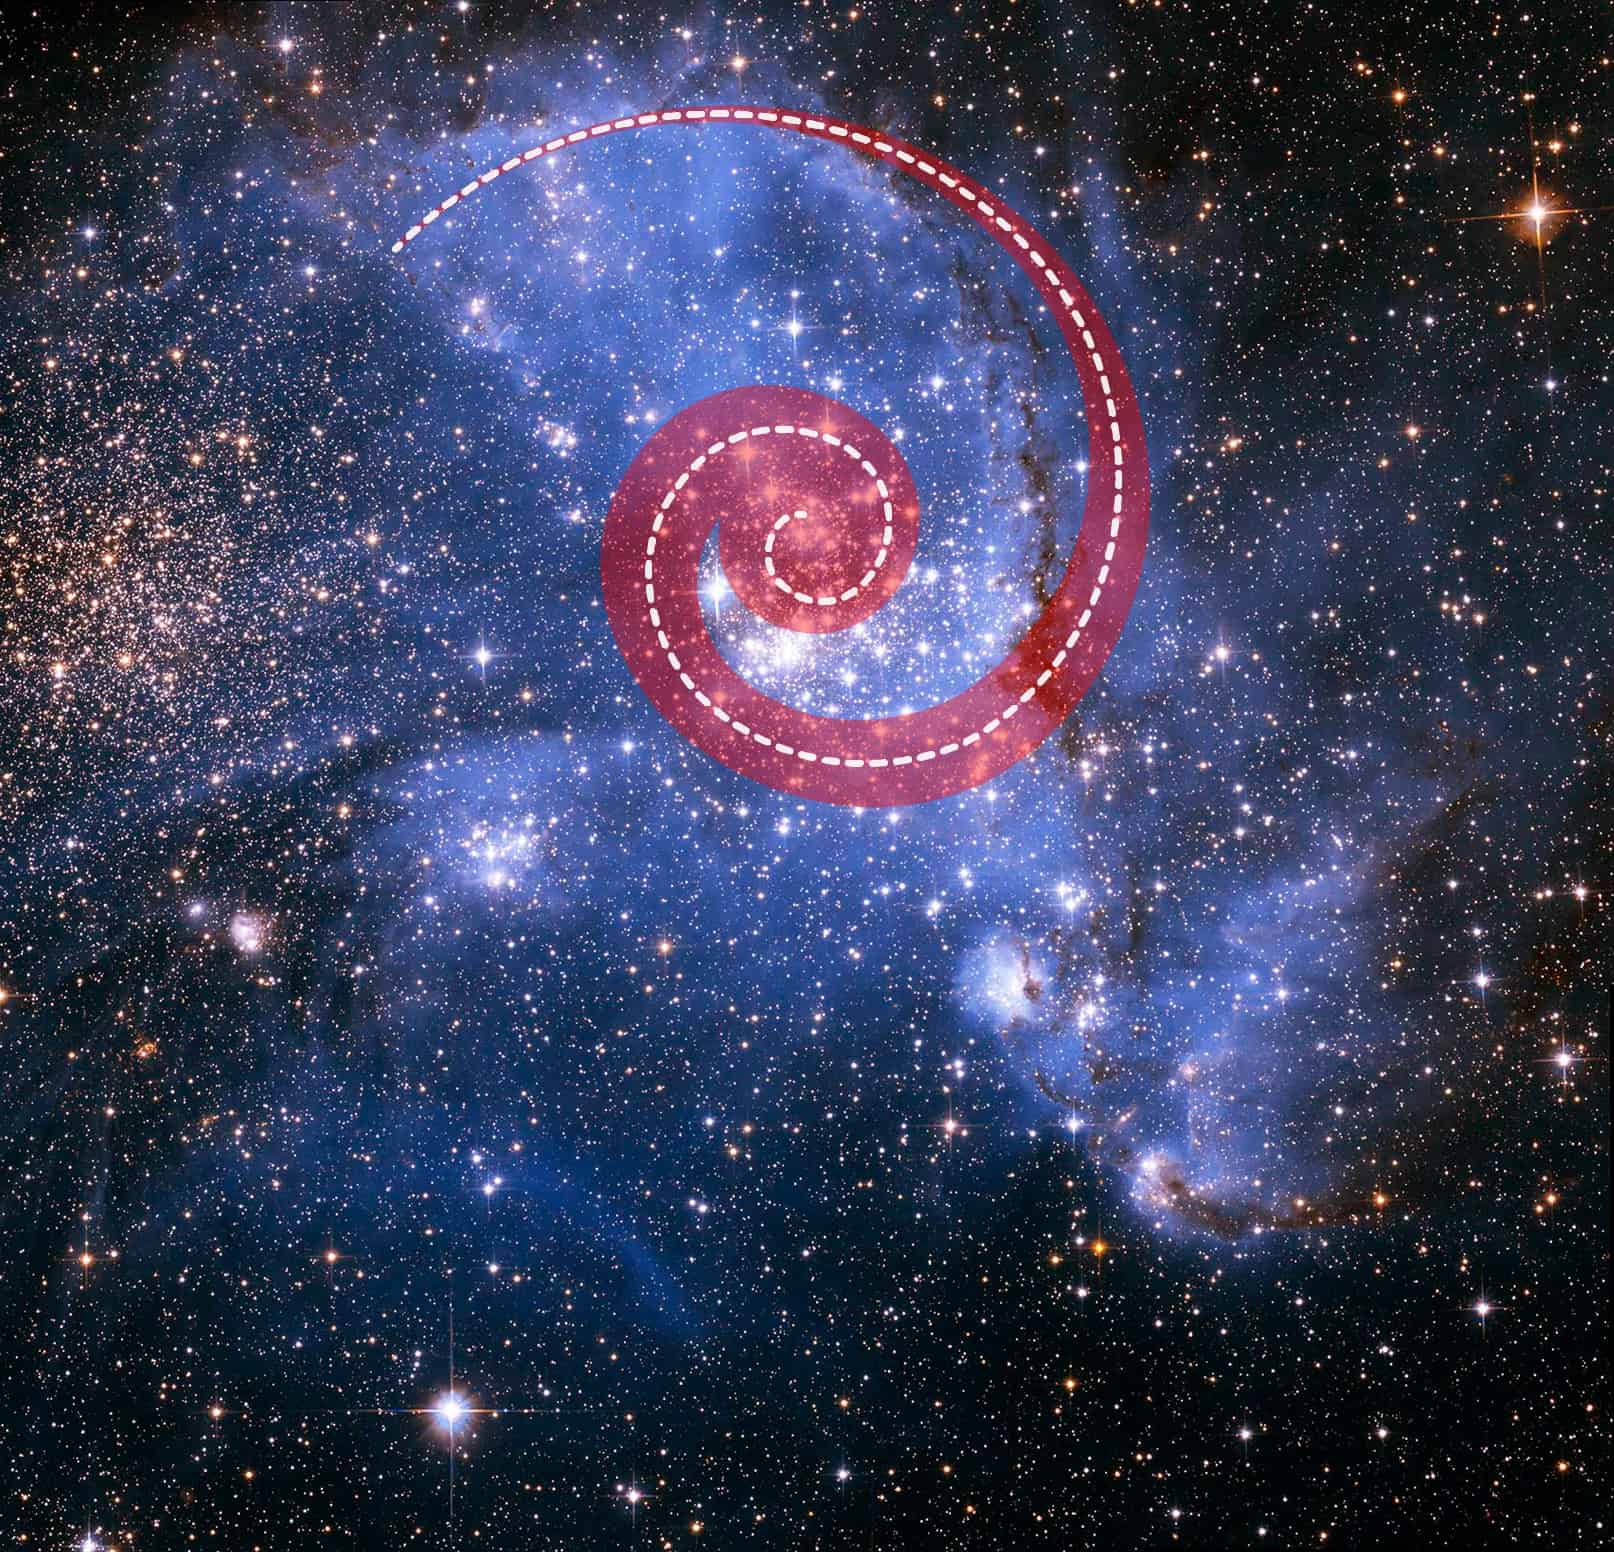 النجوم حلزونية الدوران